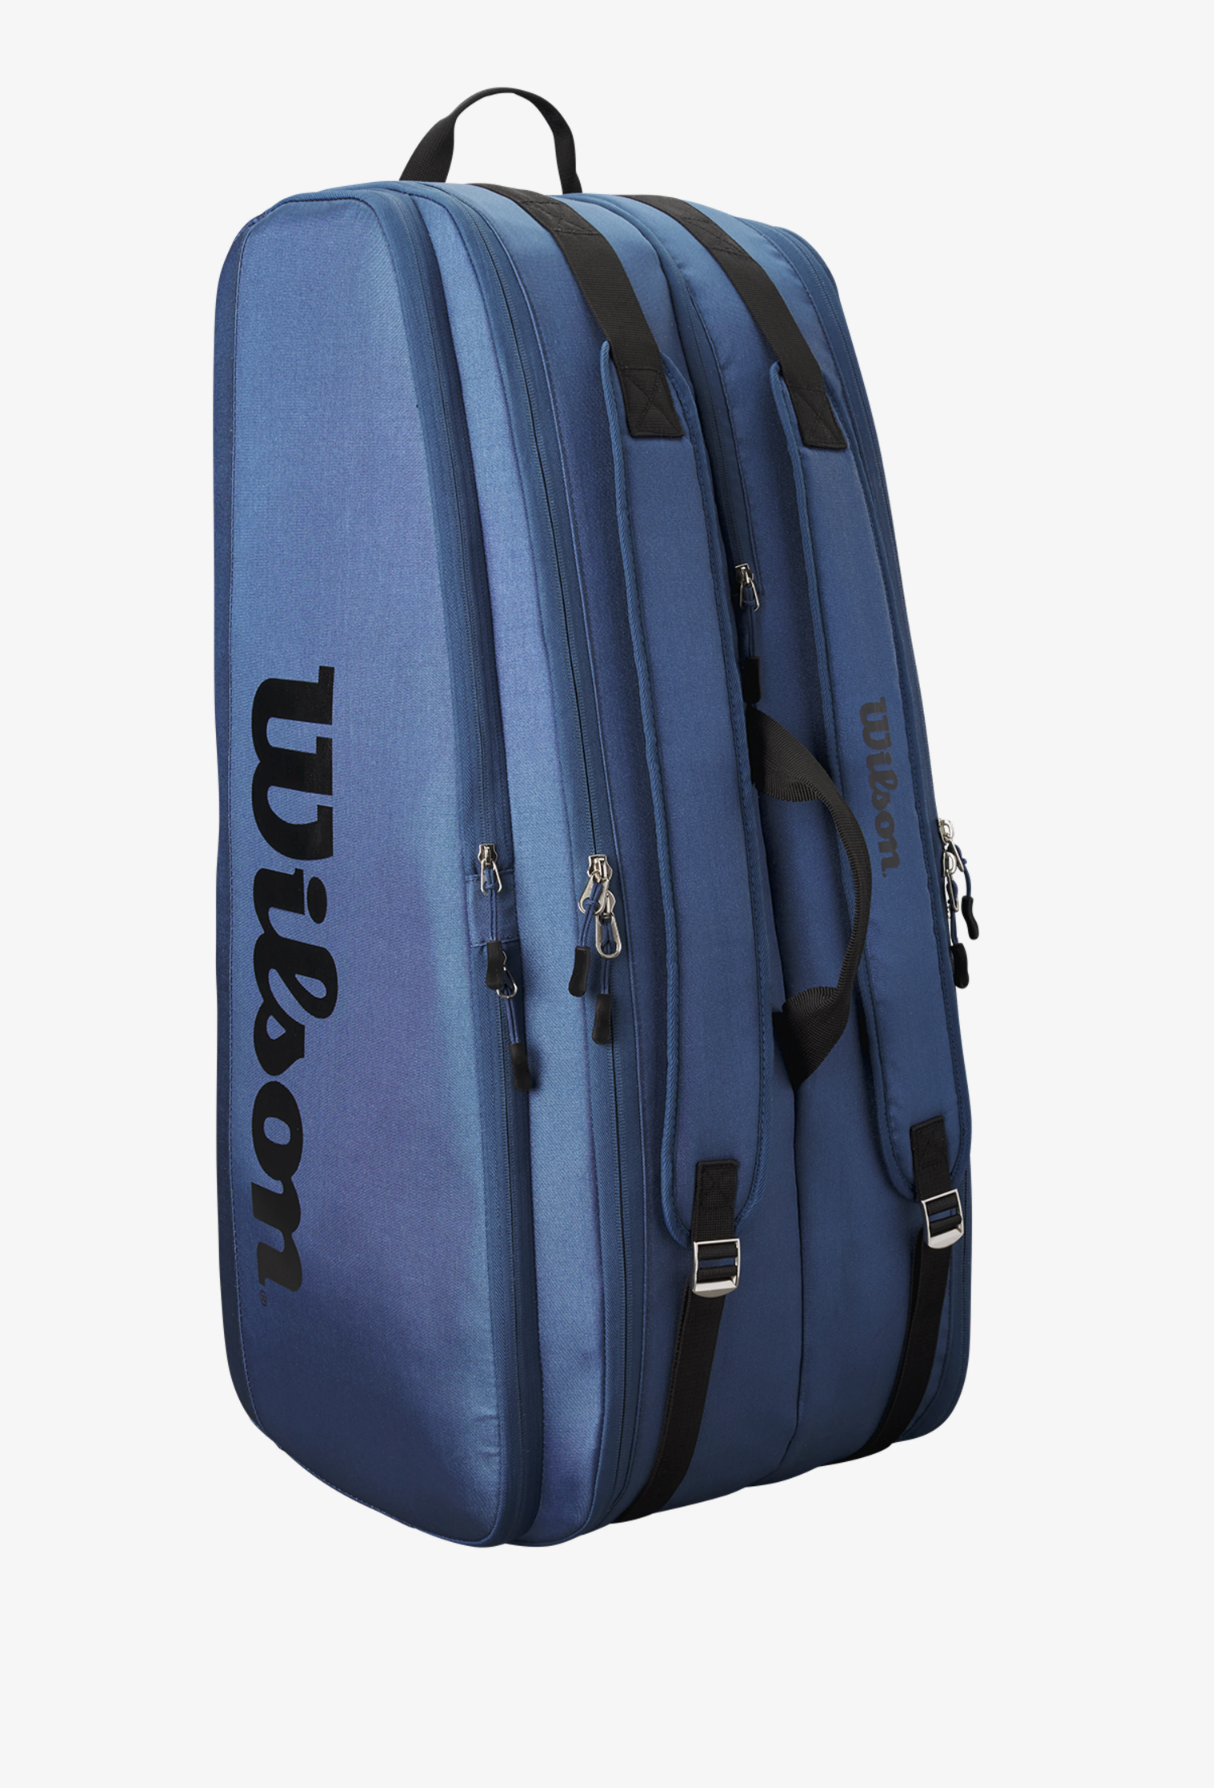 Wilson Lifestyle Duffel Racquet Bag Grey Blue